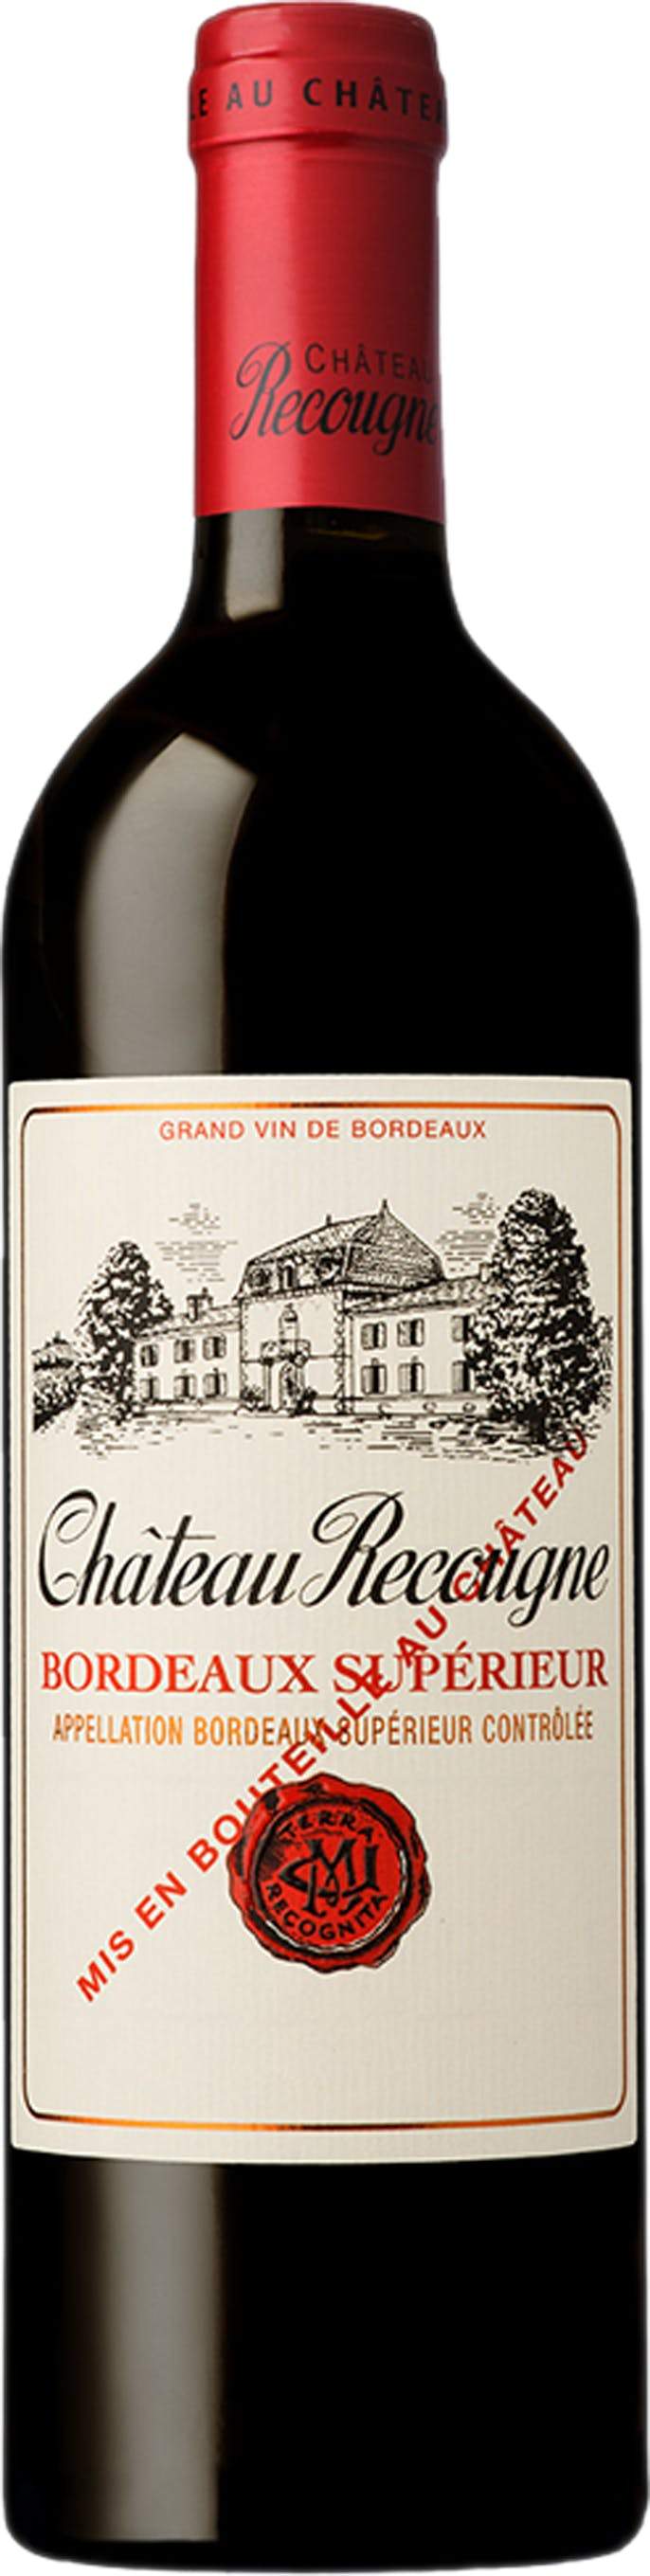 Chateau Recougne Bordeaux Superieur 2016